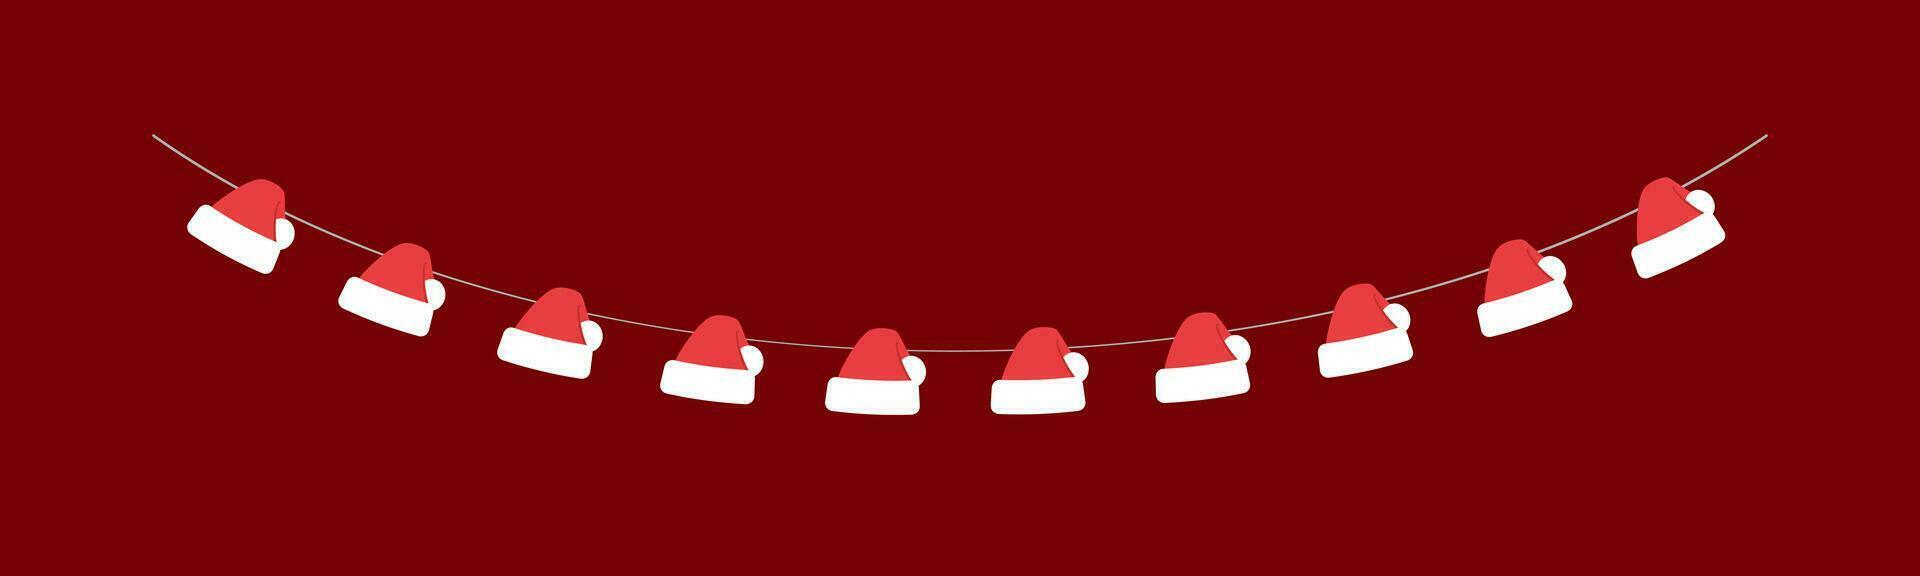 jul santa hatt vektor illustration, jul grafik festlig vinter- Semester säsong flaggväv